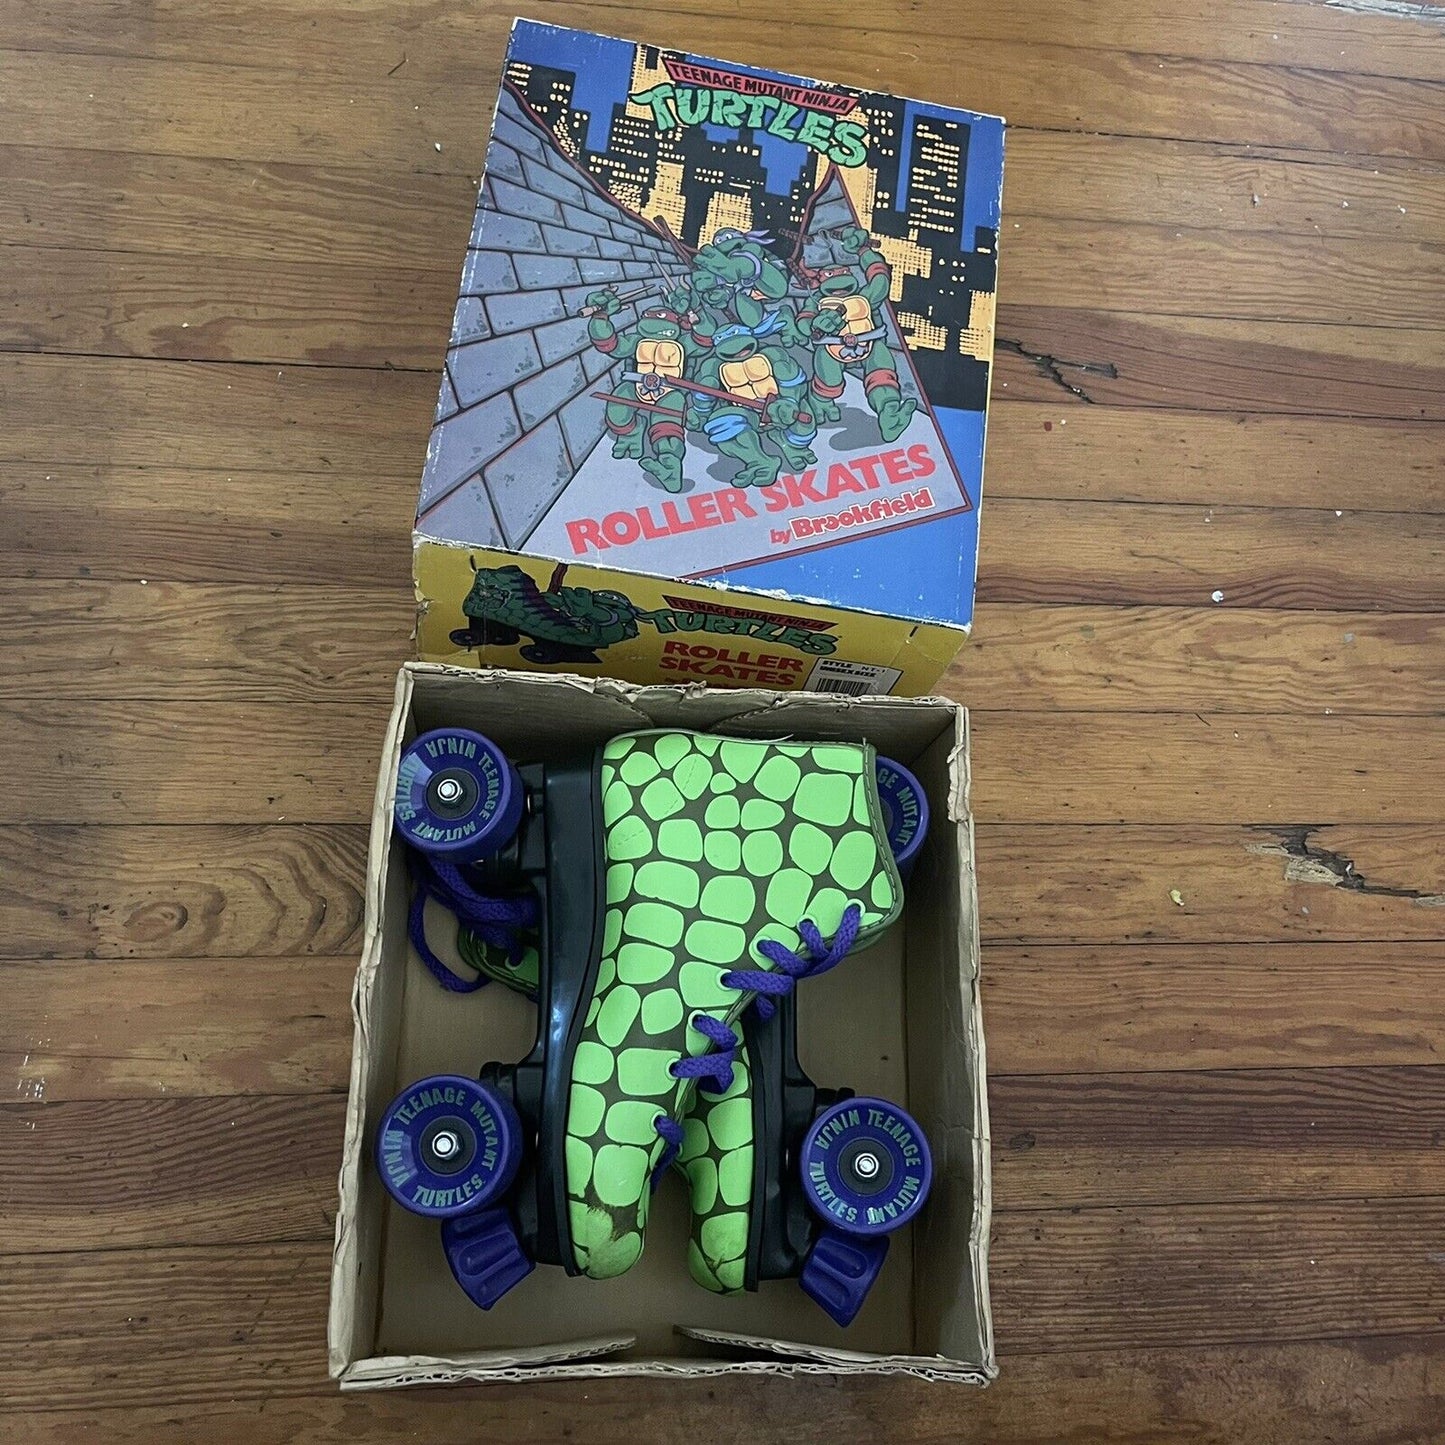 Vintage 1990 Teenage Mutant Turtles NEW Roller Skates Child Size 2 1 TMNT